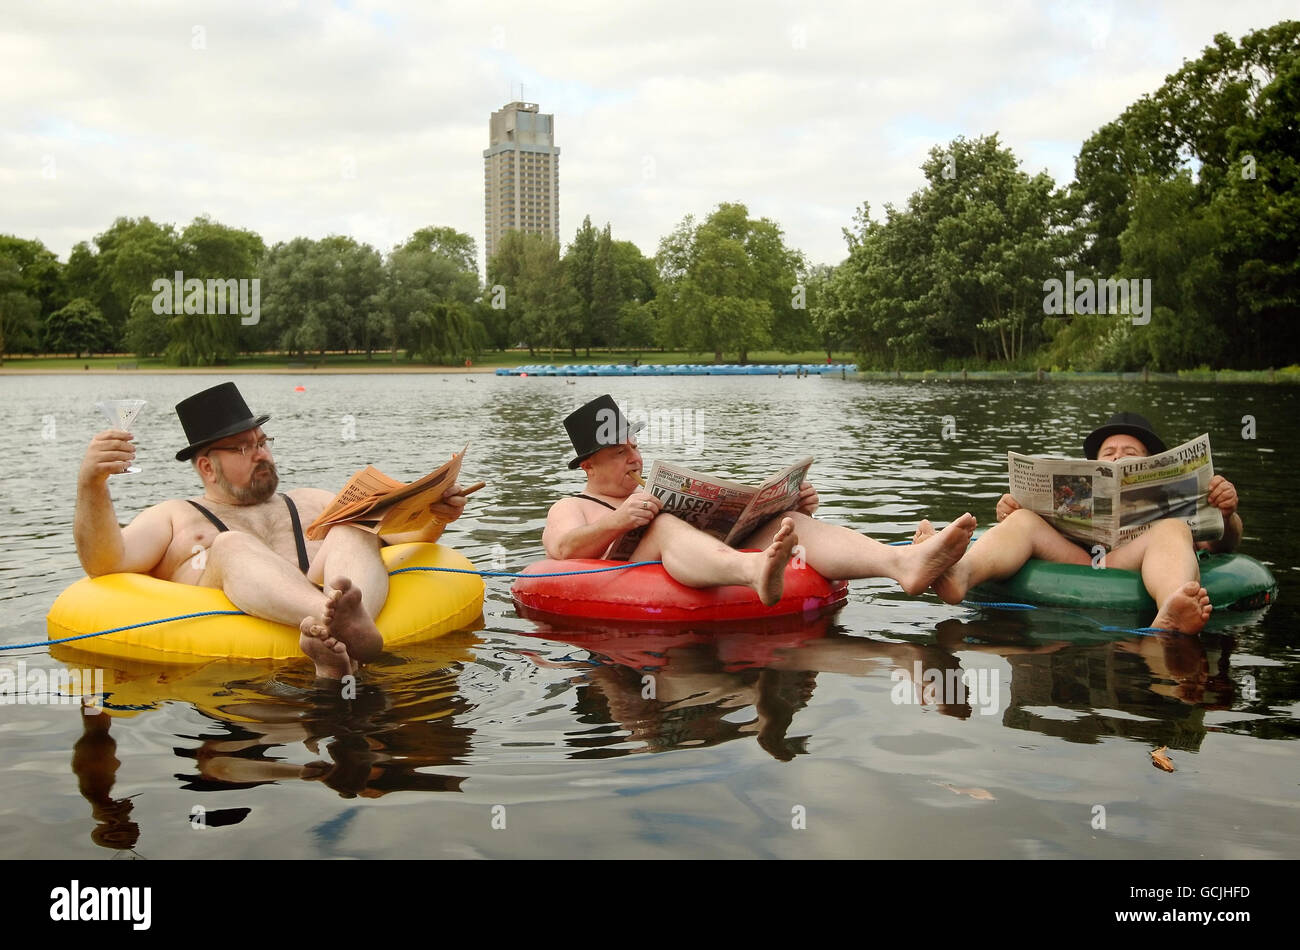 Uomini d'affari vestiti in mankini galleggiano su anelli di gomma sulla serpentina a Hyde Park, nel centro di Londra, durante una fotocellula per la nuova società di telefonia mobile 'a guida di comunità' giffgaff. Foto Stock